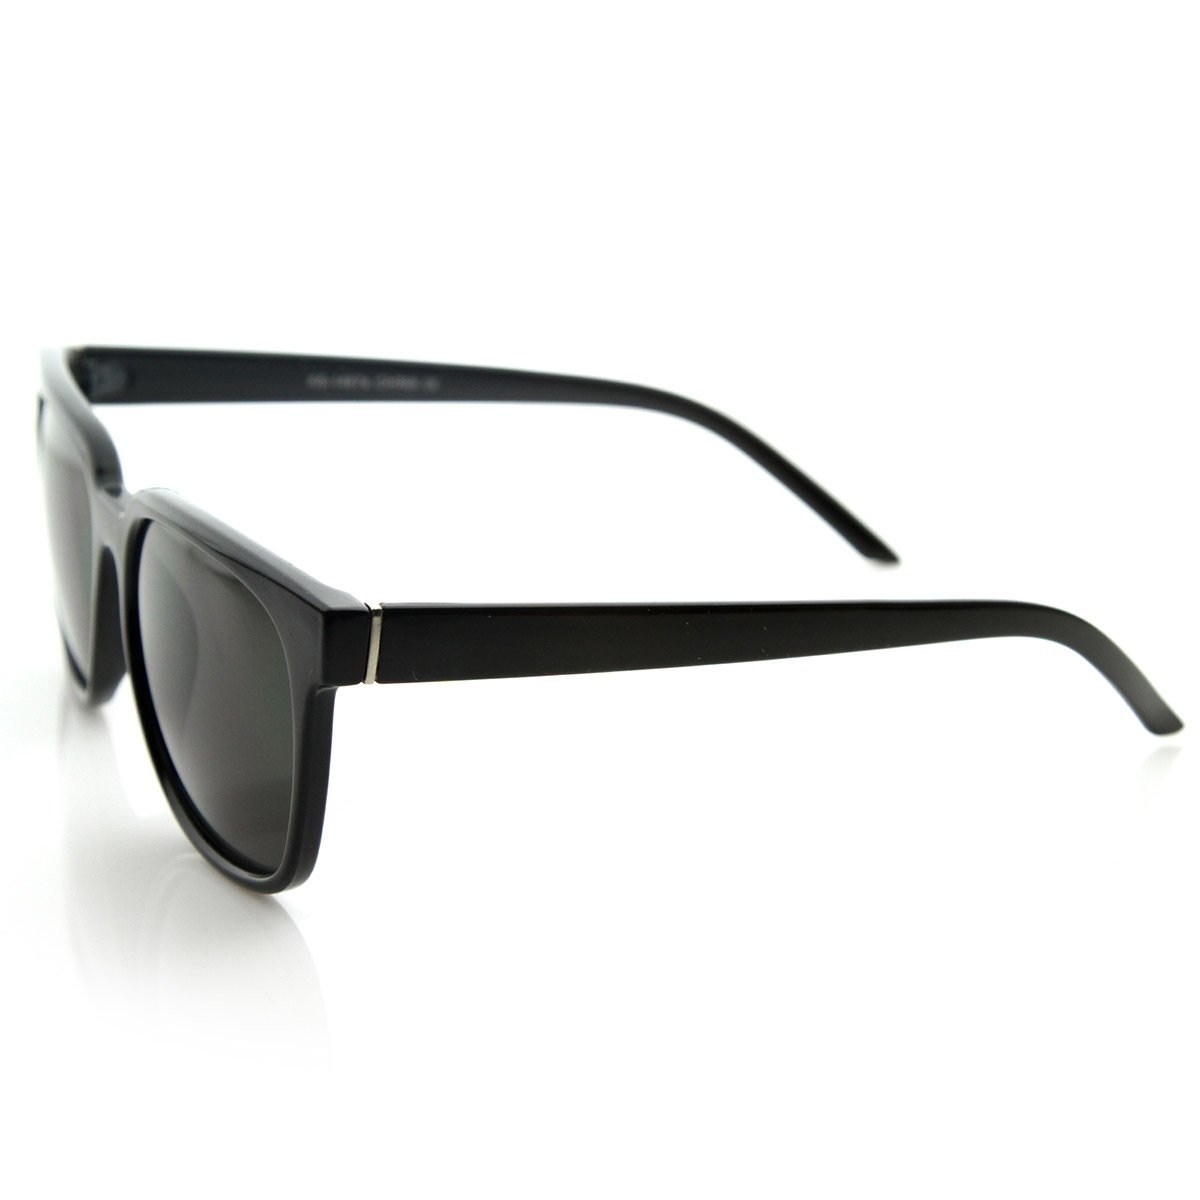 Retro Fashion Inspired Basic Horned Rim Horn Rimmed Style Sunglasses - Tortoise